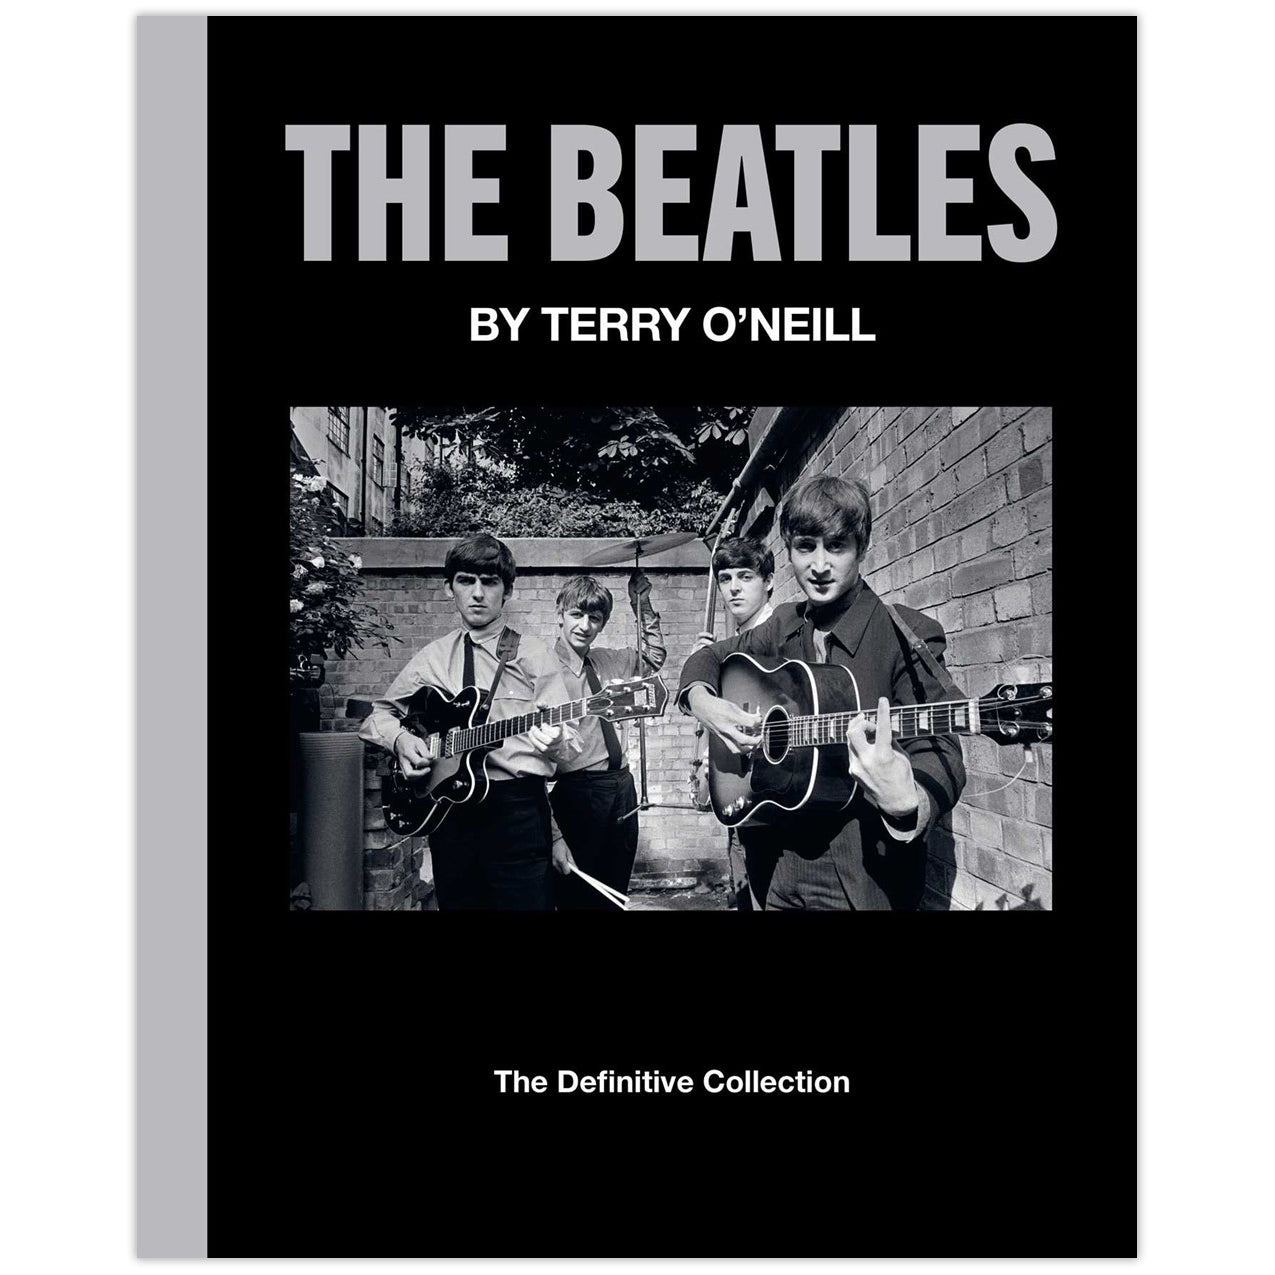 ナウアンドゼンDefinitive The Beatles 1966 Collection